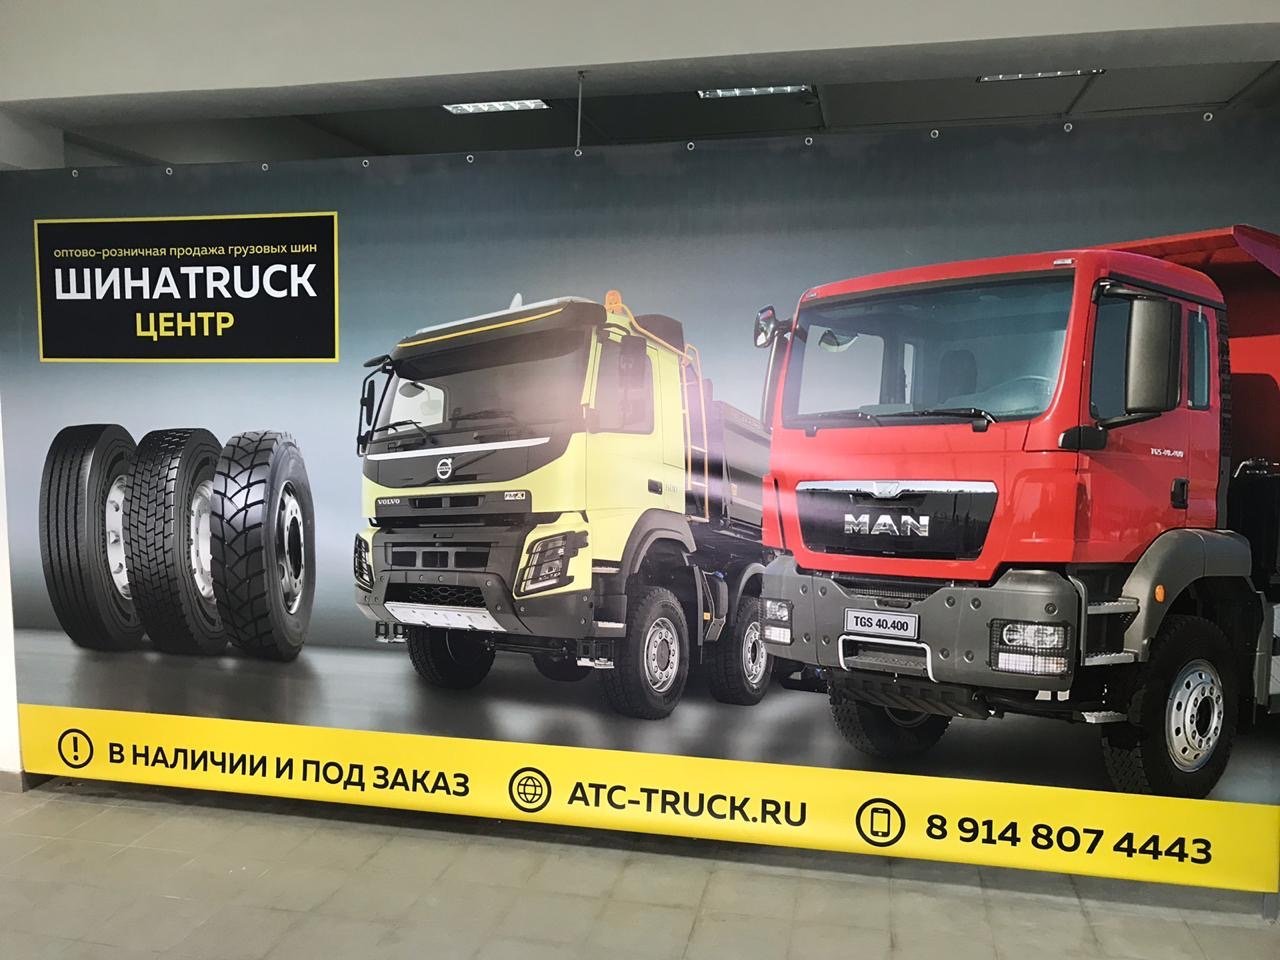 Интернет магазин грузовиков. Ассортимент грузовых автомобилей марки FAW. ATC Truck. Китайские Грузовики реклама. Наши Грузовики отзывы.